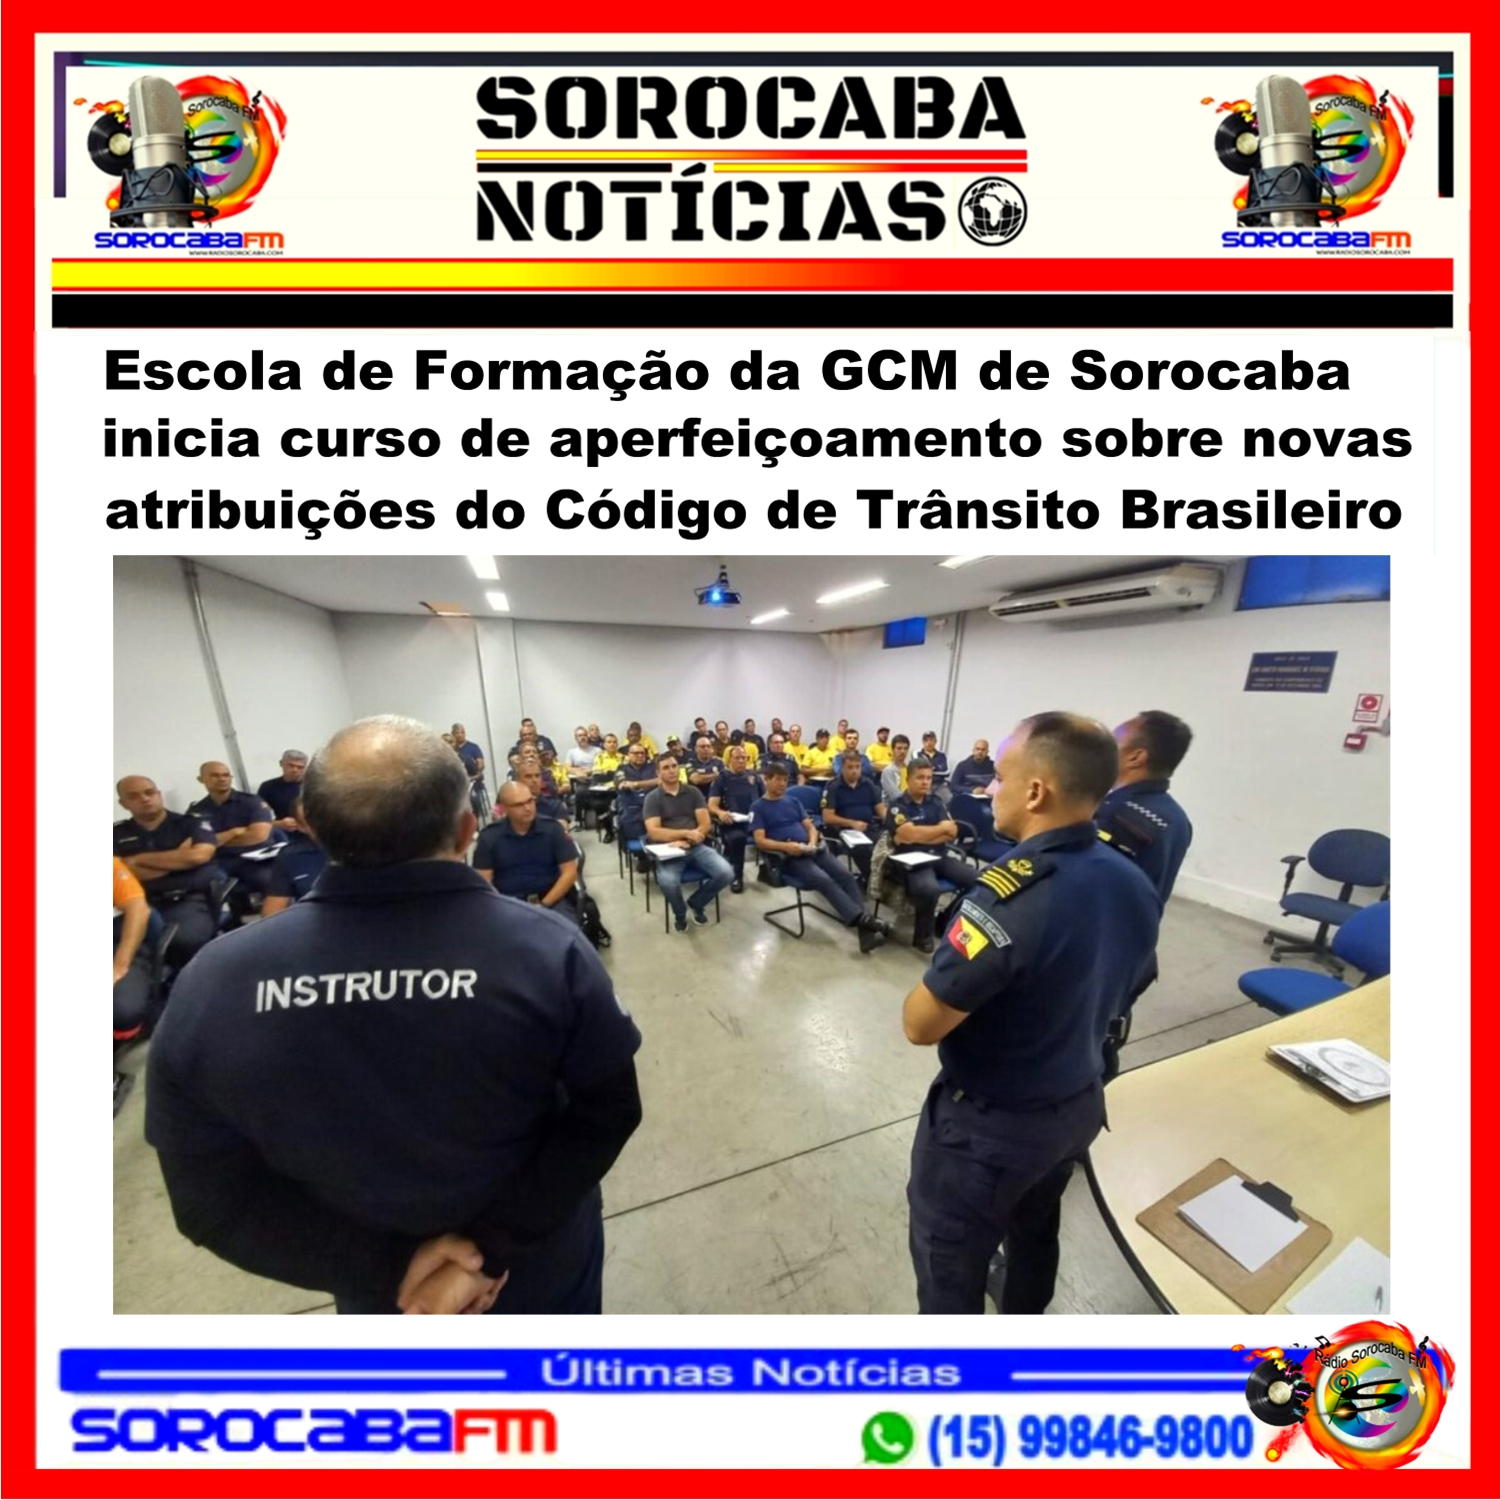 Escola de Formação da GCM de Sorocaba inicia curso de aperfeiçoamento sobre novas atribuições do Código de Trânsito Brasileiro